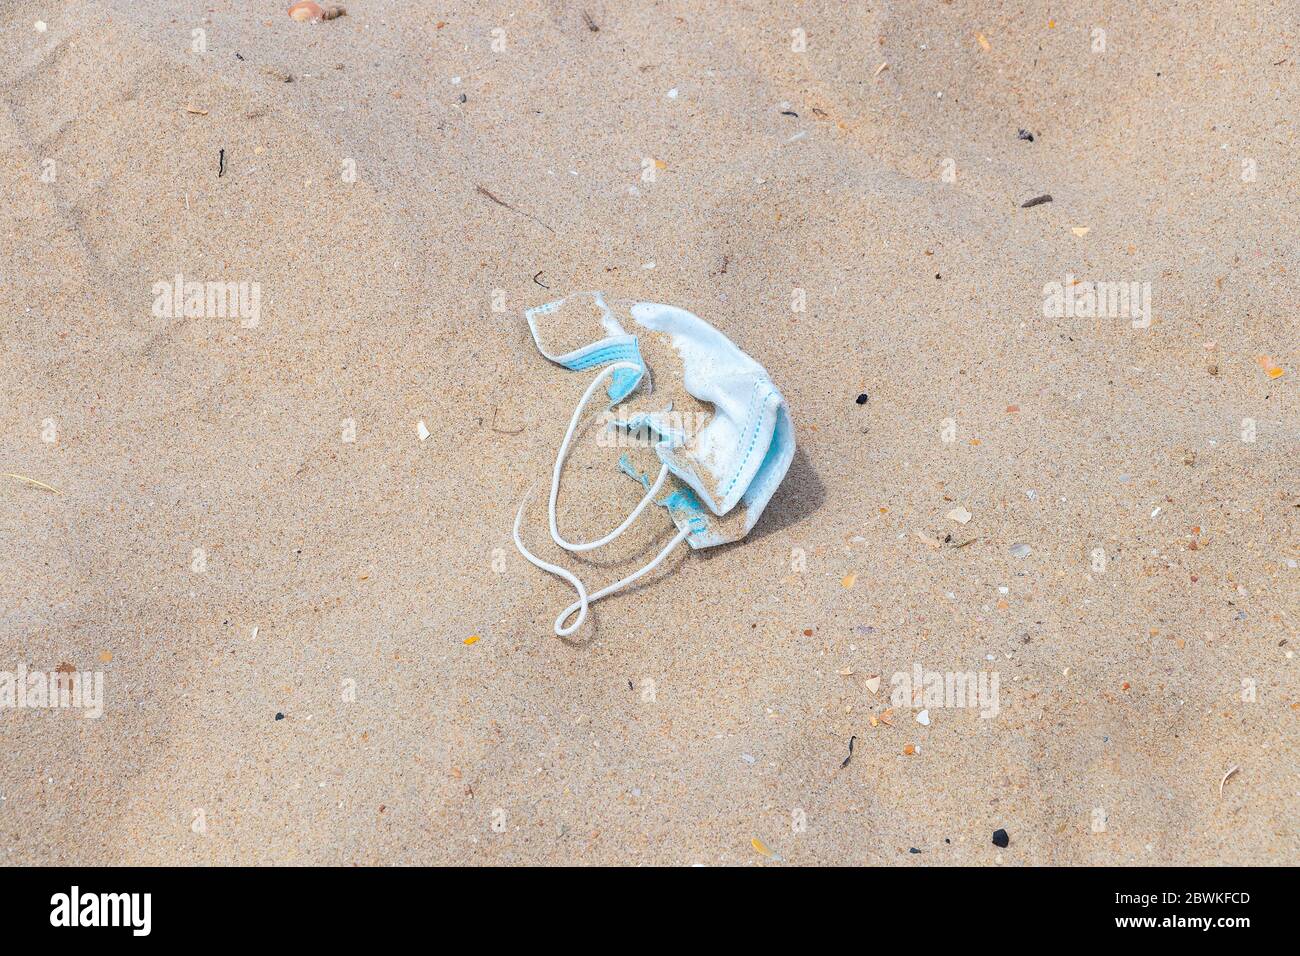 Una maschera chirurgica di protezione scartata sulla spiaggia di sabbia. Maschera medica usata sporca scartata sulla spiaggia dopo essere stata utilizzata durante il coronavirus covid-19 e. Foto Stock